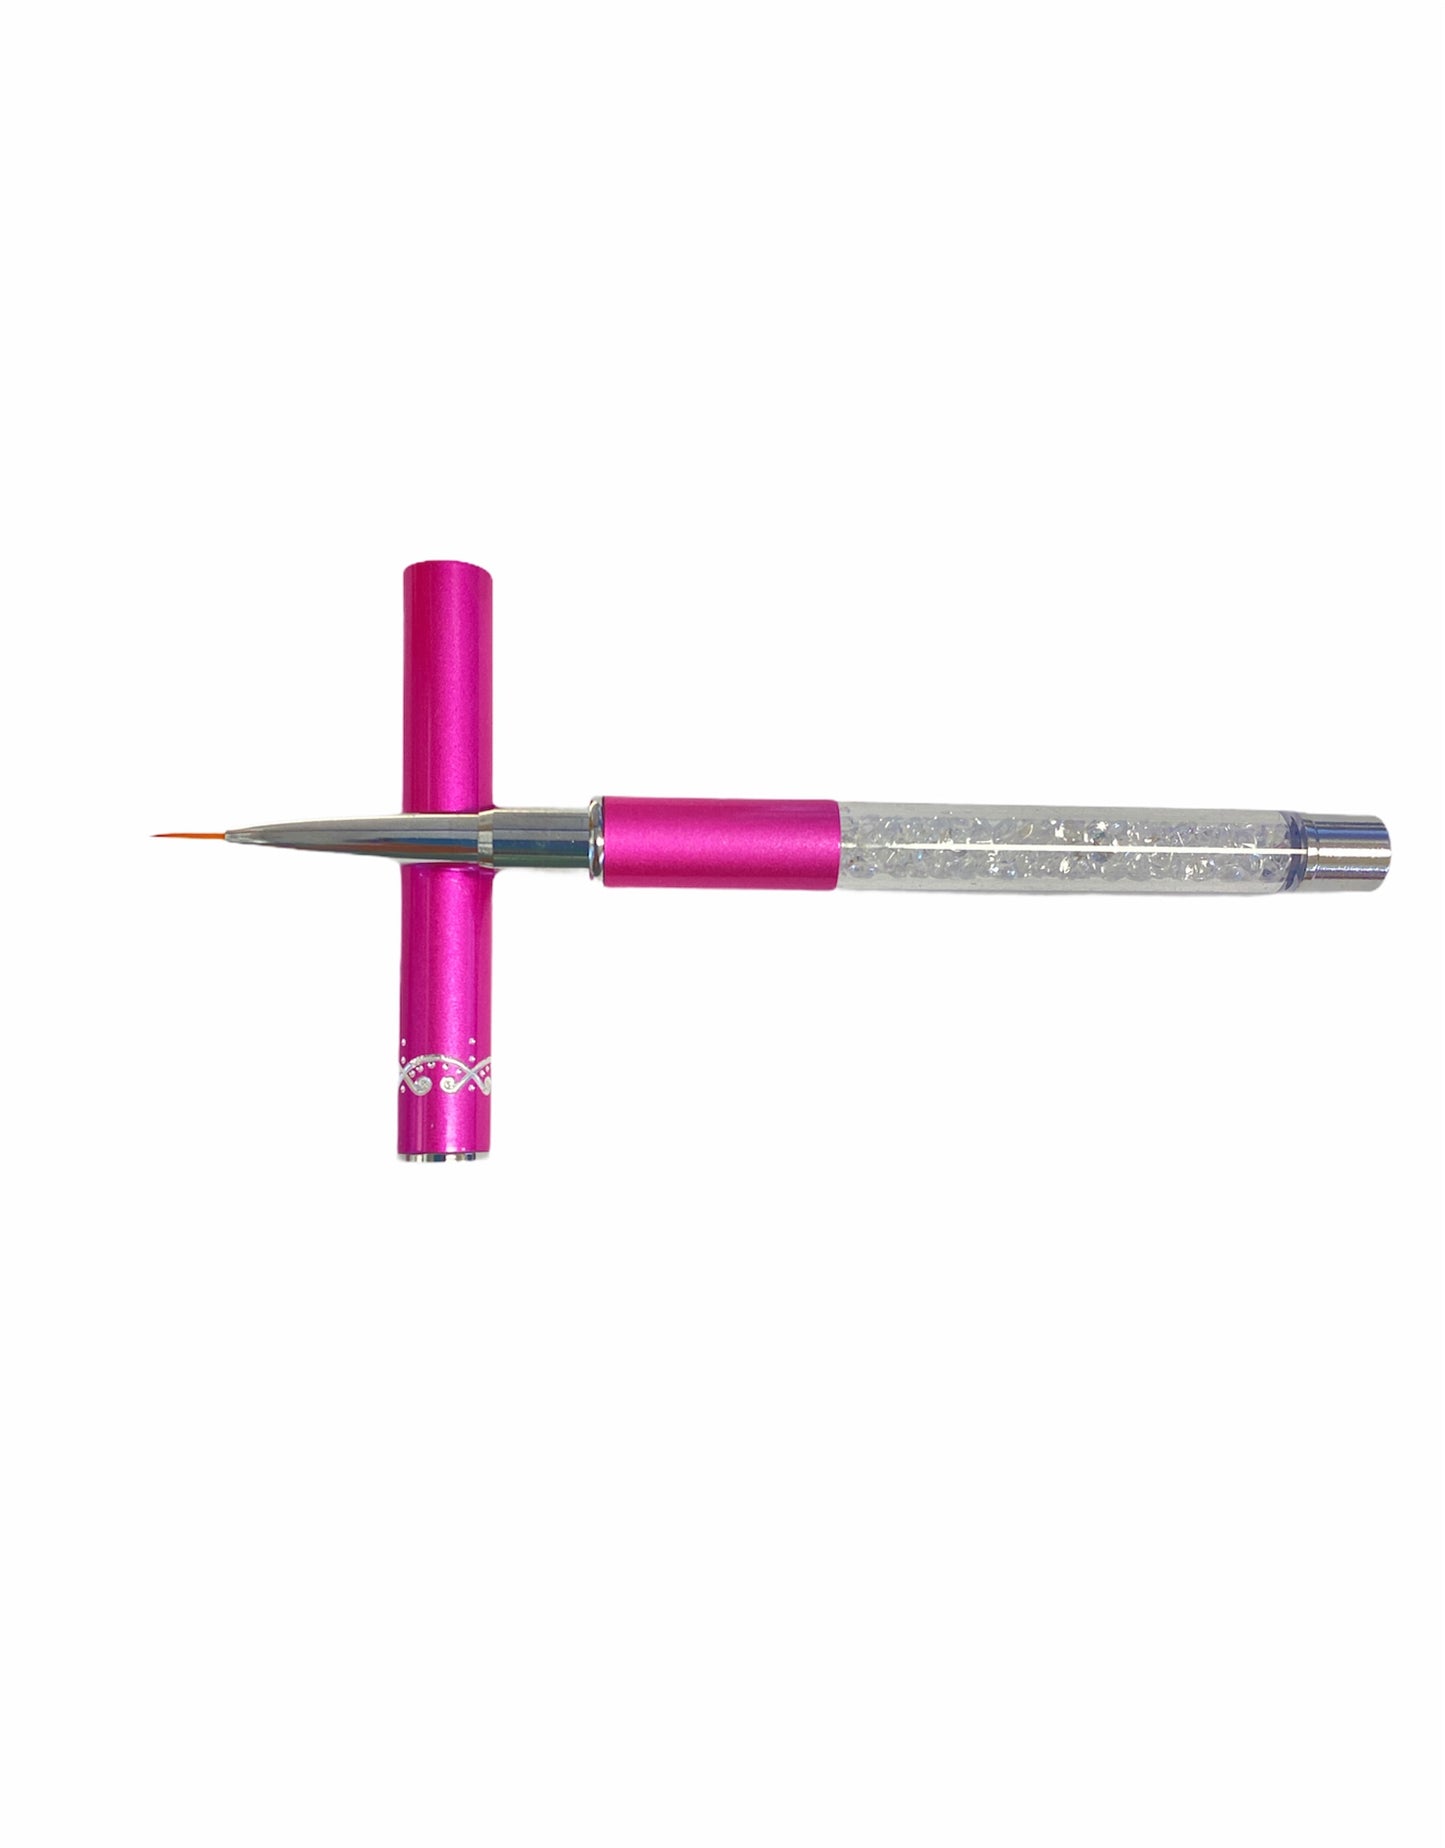 Detail Nail Art Brush Pink Handle 9mm - #93110 - Premier Nail Supply 